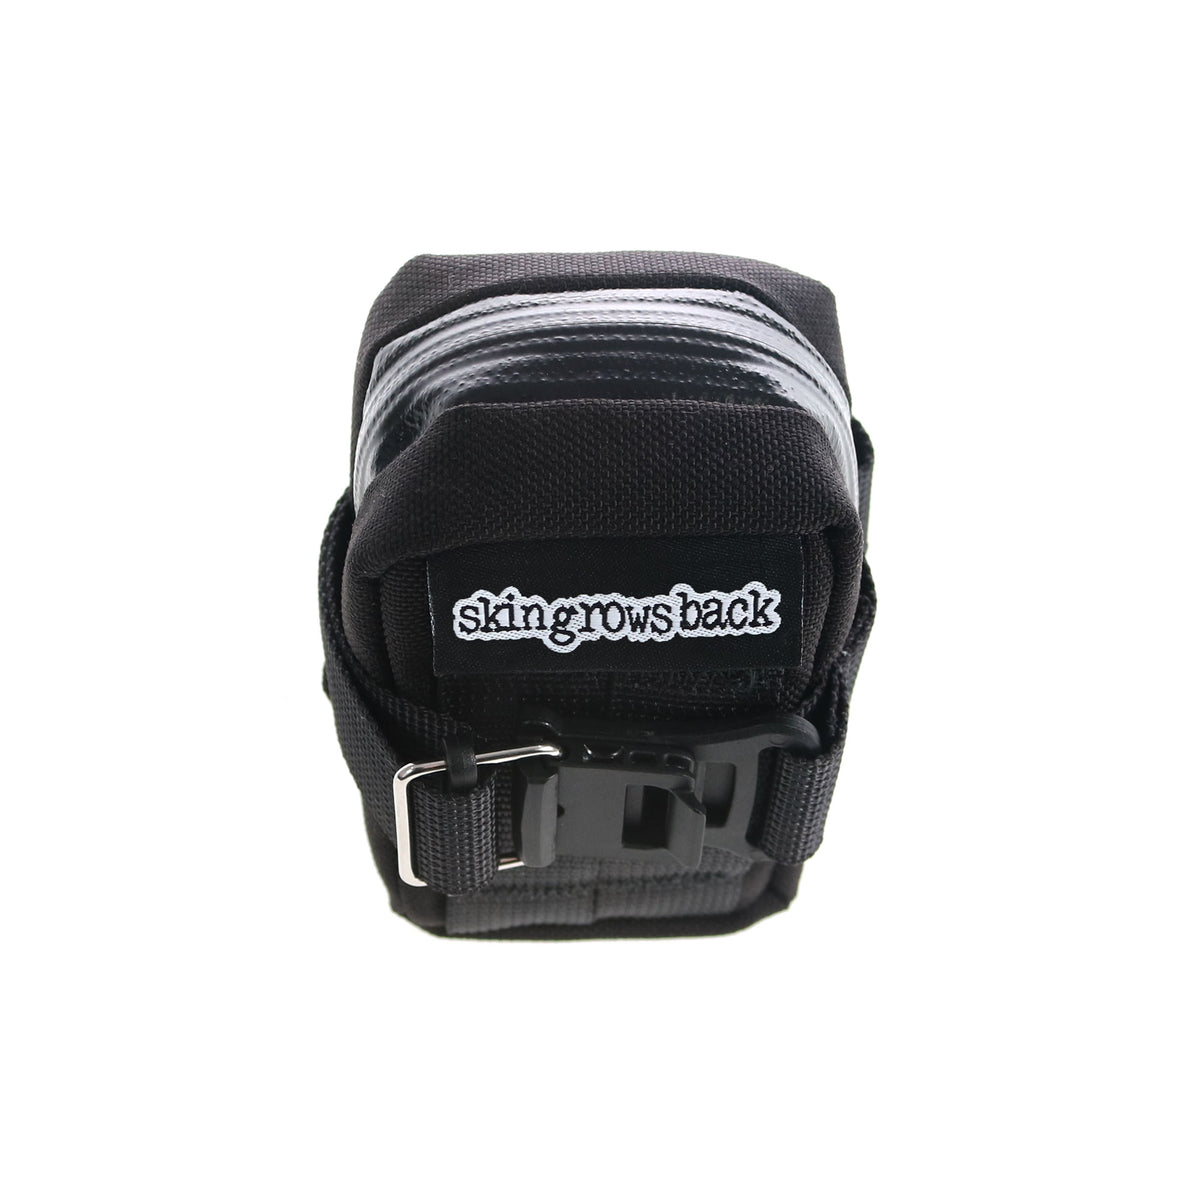 skingrowsback Plan B Micron cycling saddle bag black back view